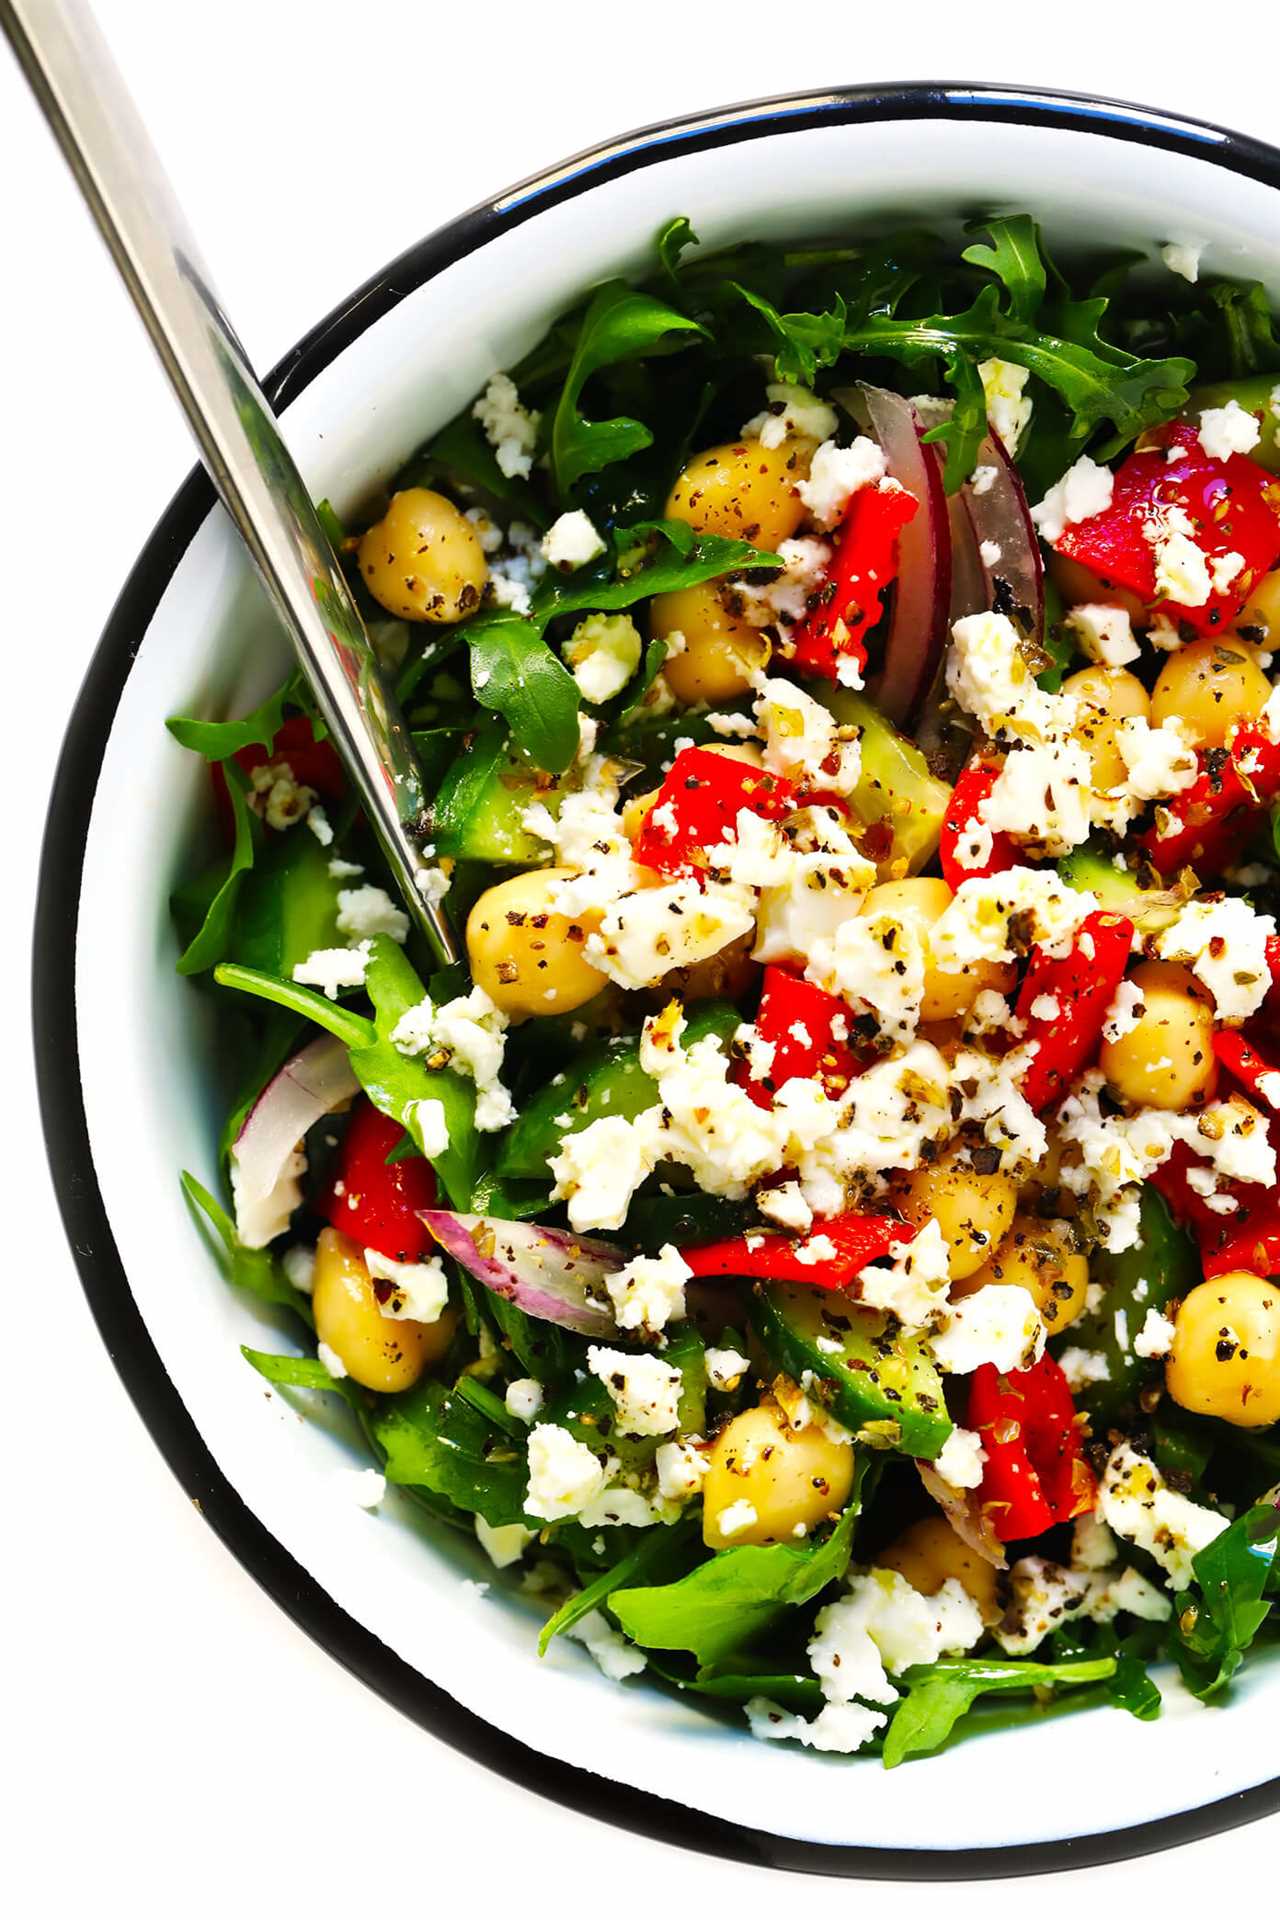 Healthy Mediterranean salad recipes